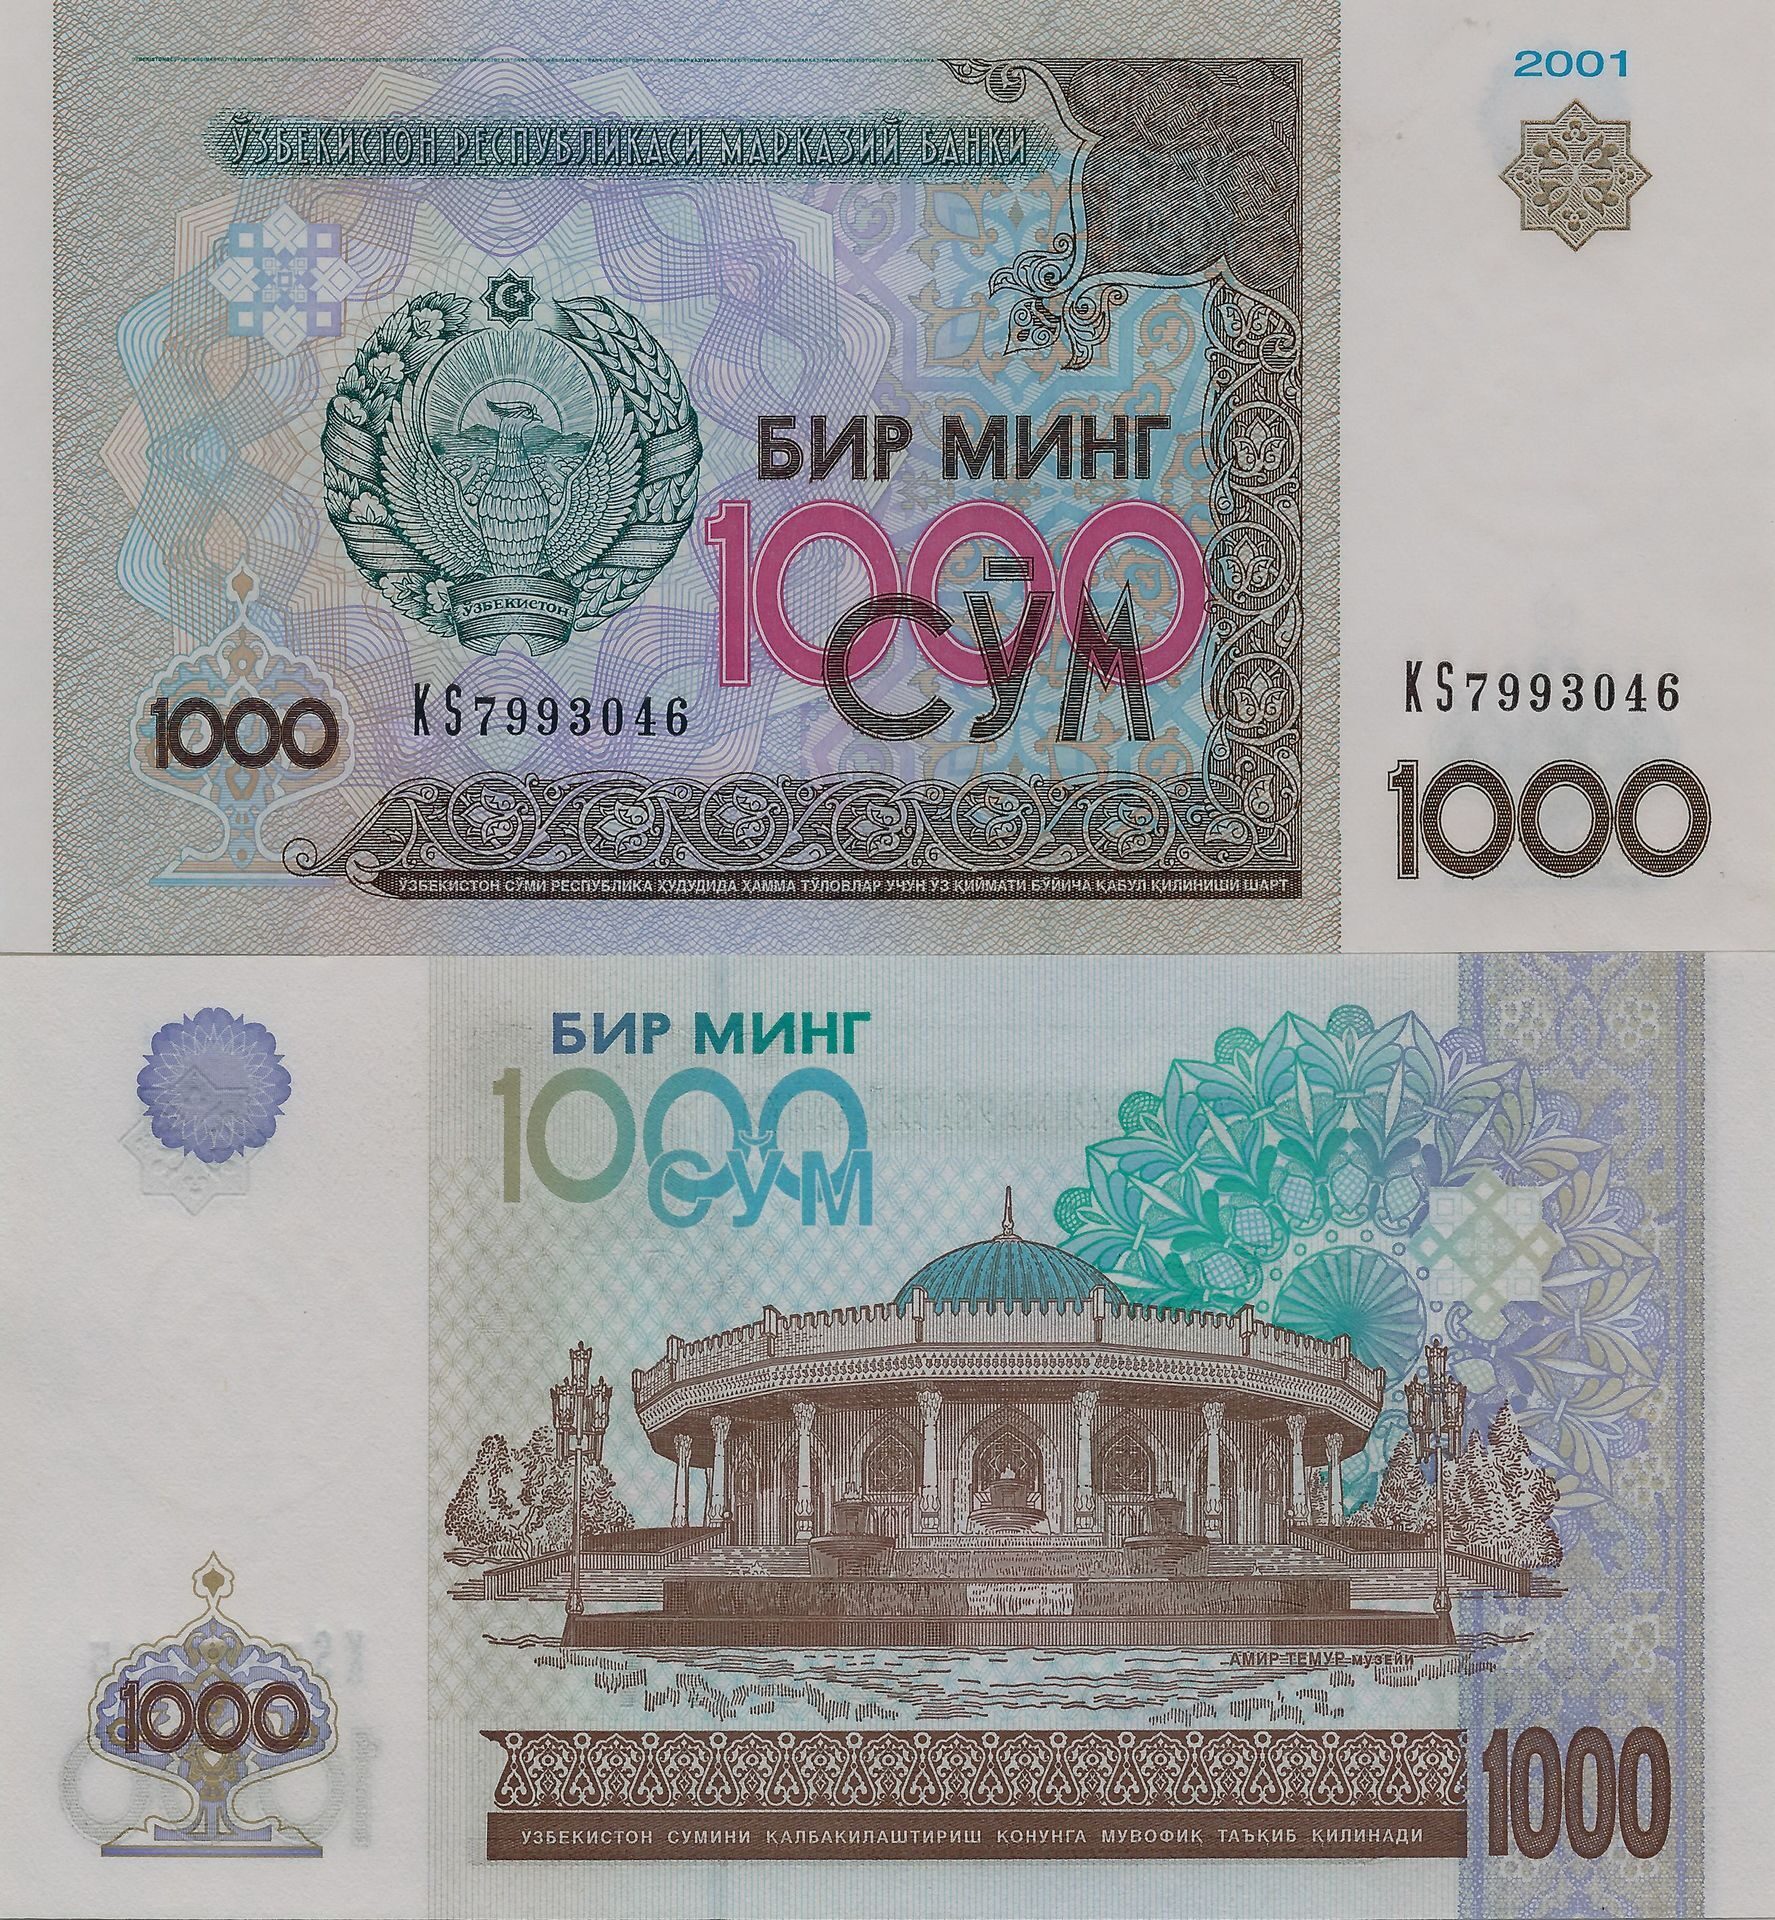 500 рублей в узбекских. Узбекистан 1000 сум 2001 года. 1000 Сум купюра. 1000 Сум в рублях. Деньги копюрыв 2001 году.